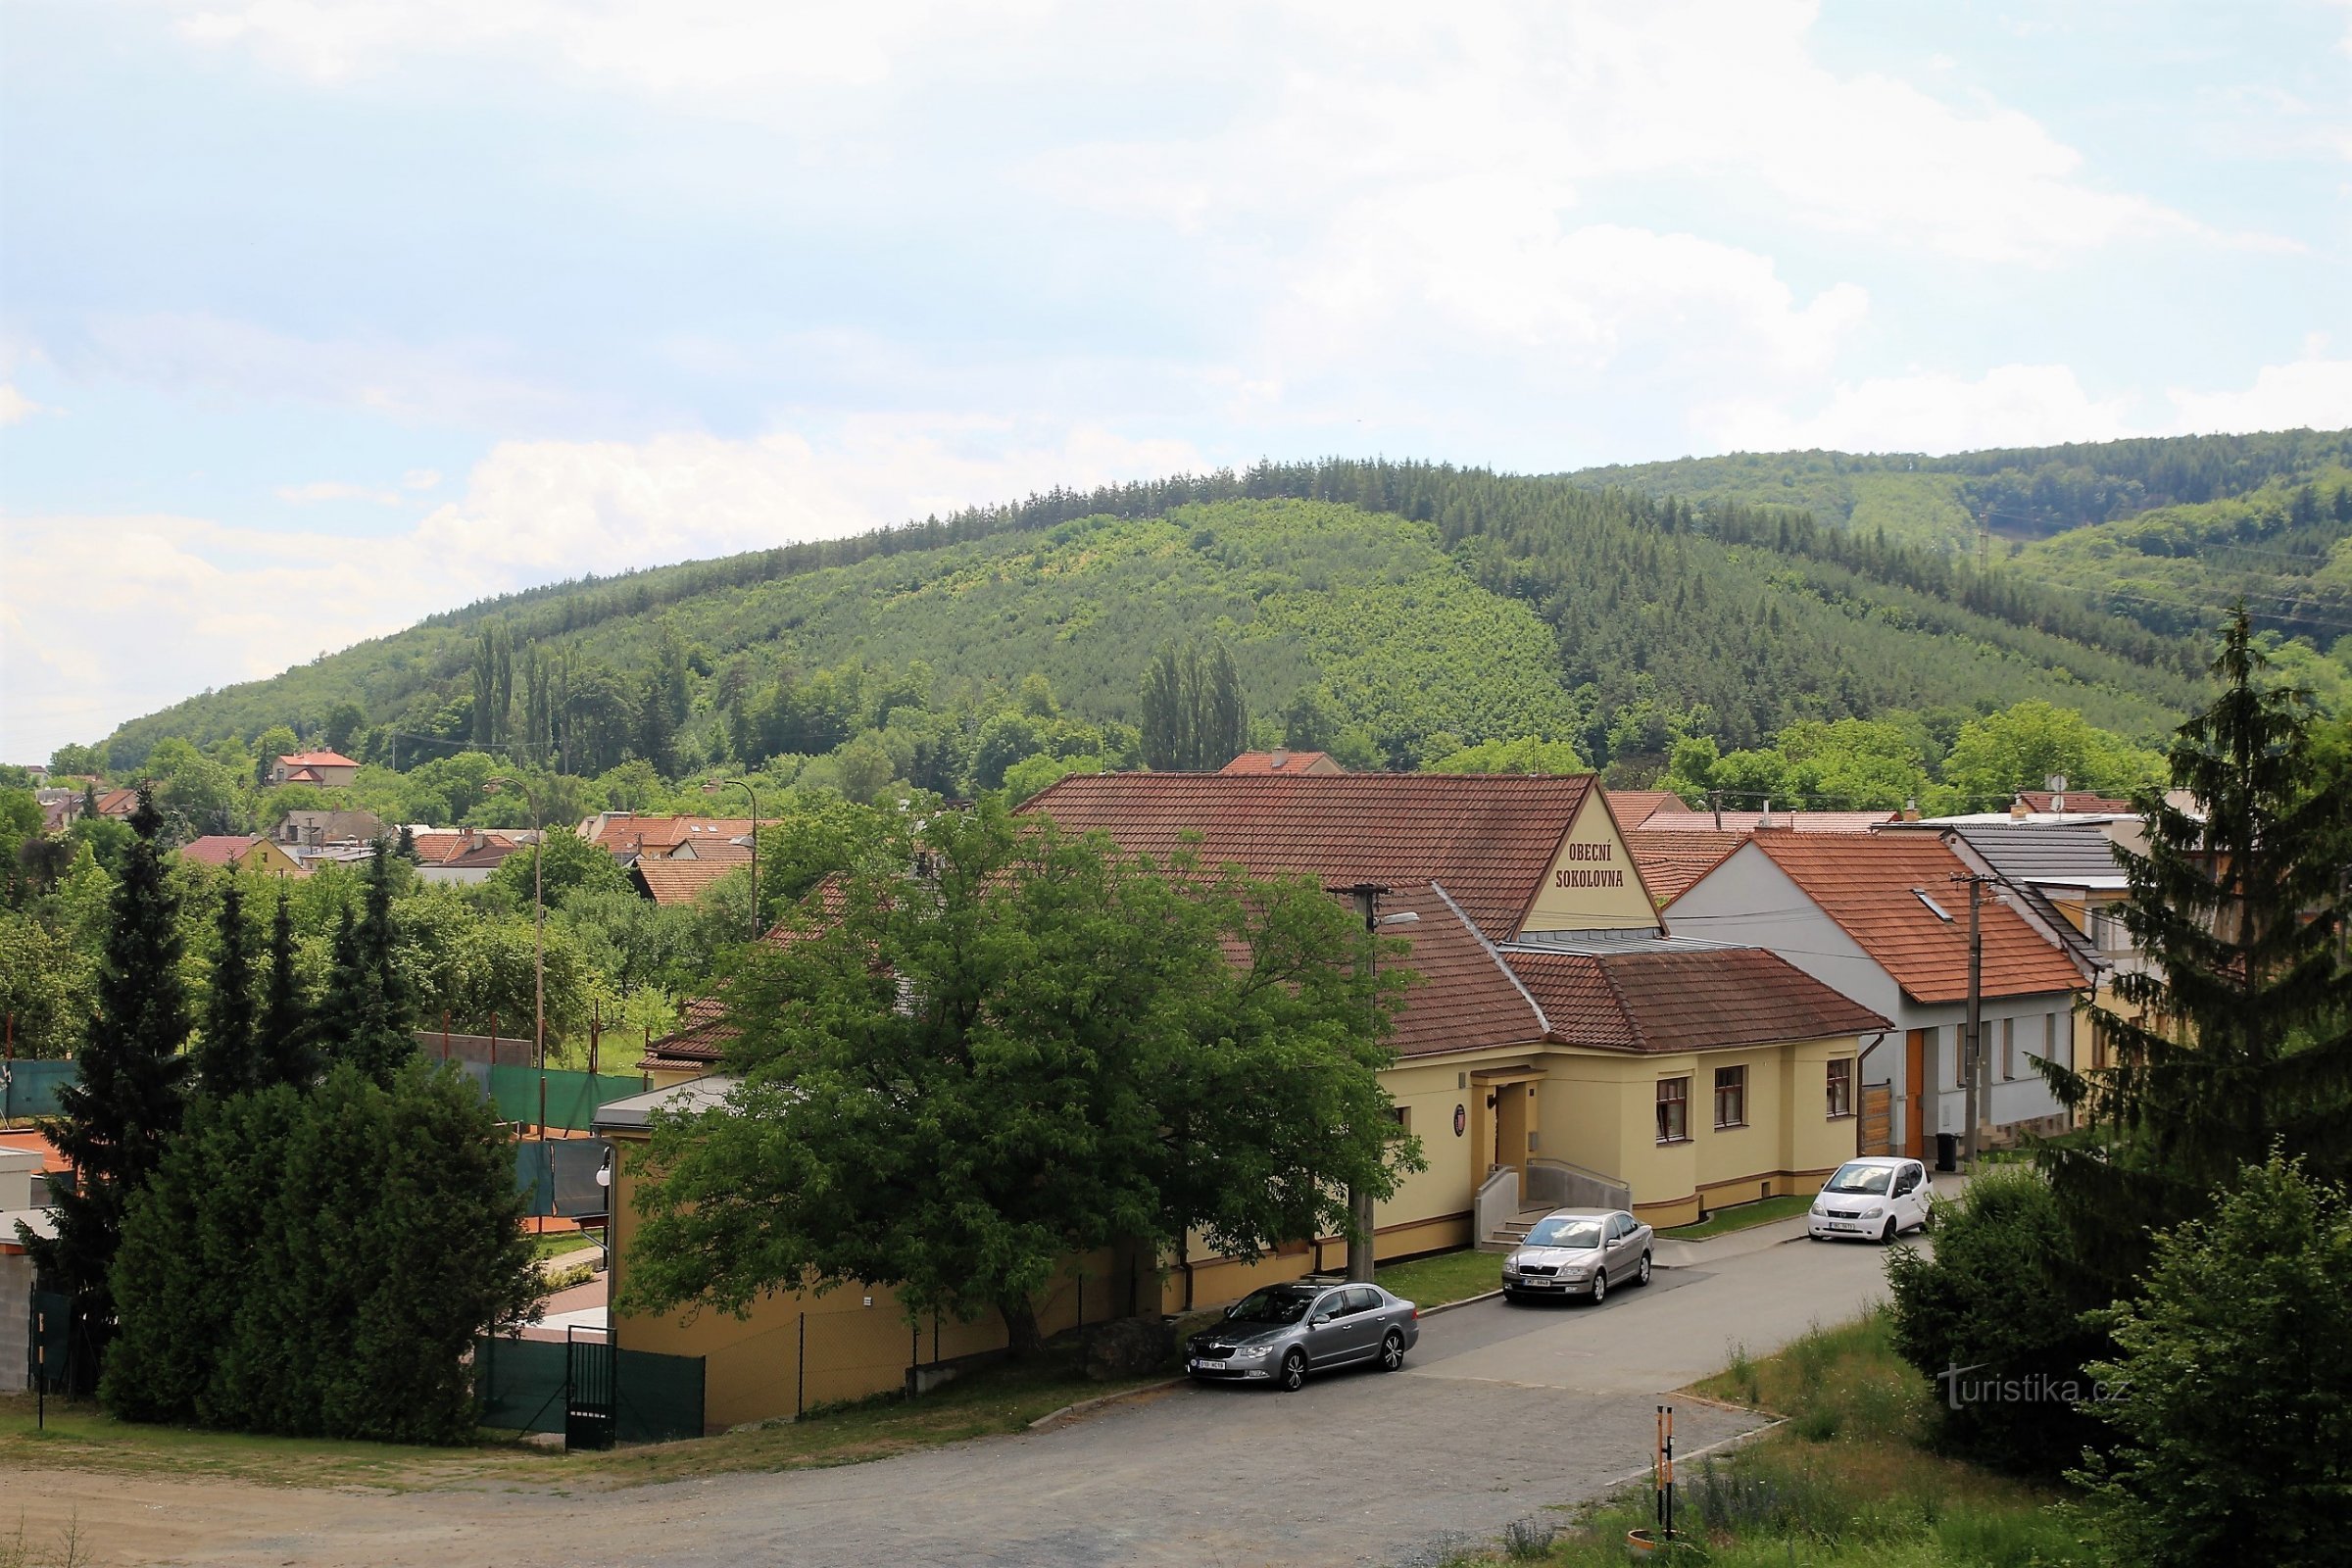 Ostrá hora rejser sig direkte over landsbyen Česká, bag den dominerer Babys hovedryg